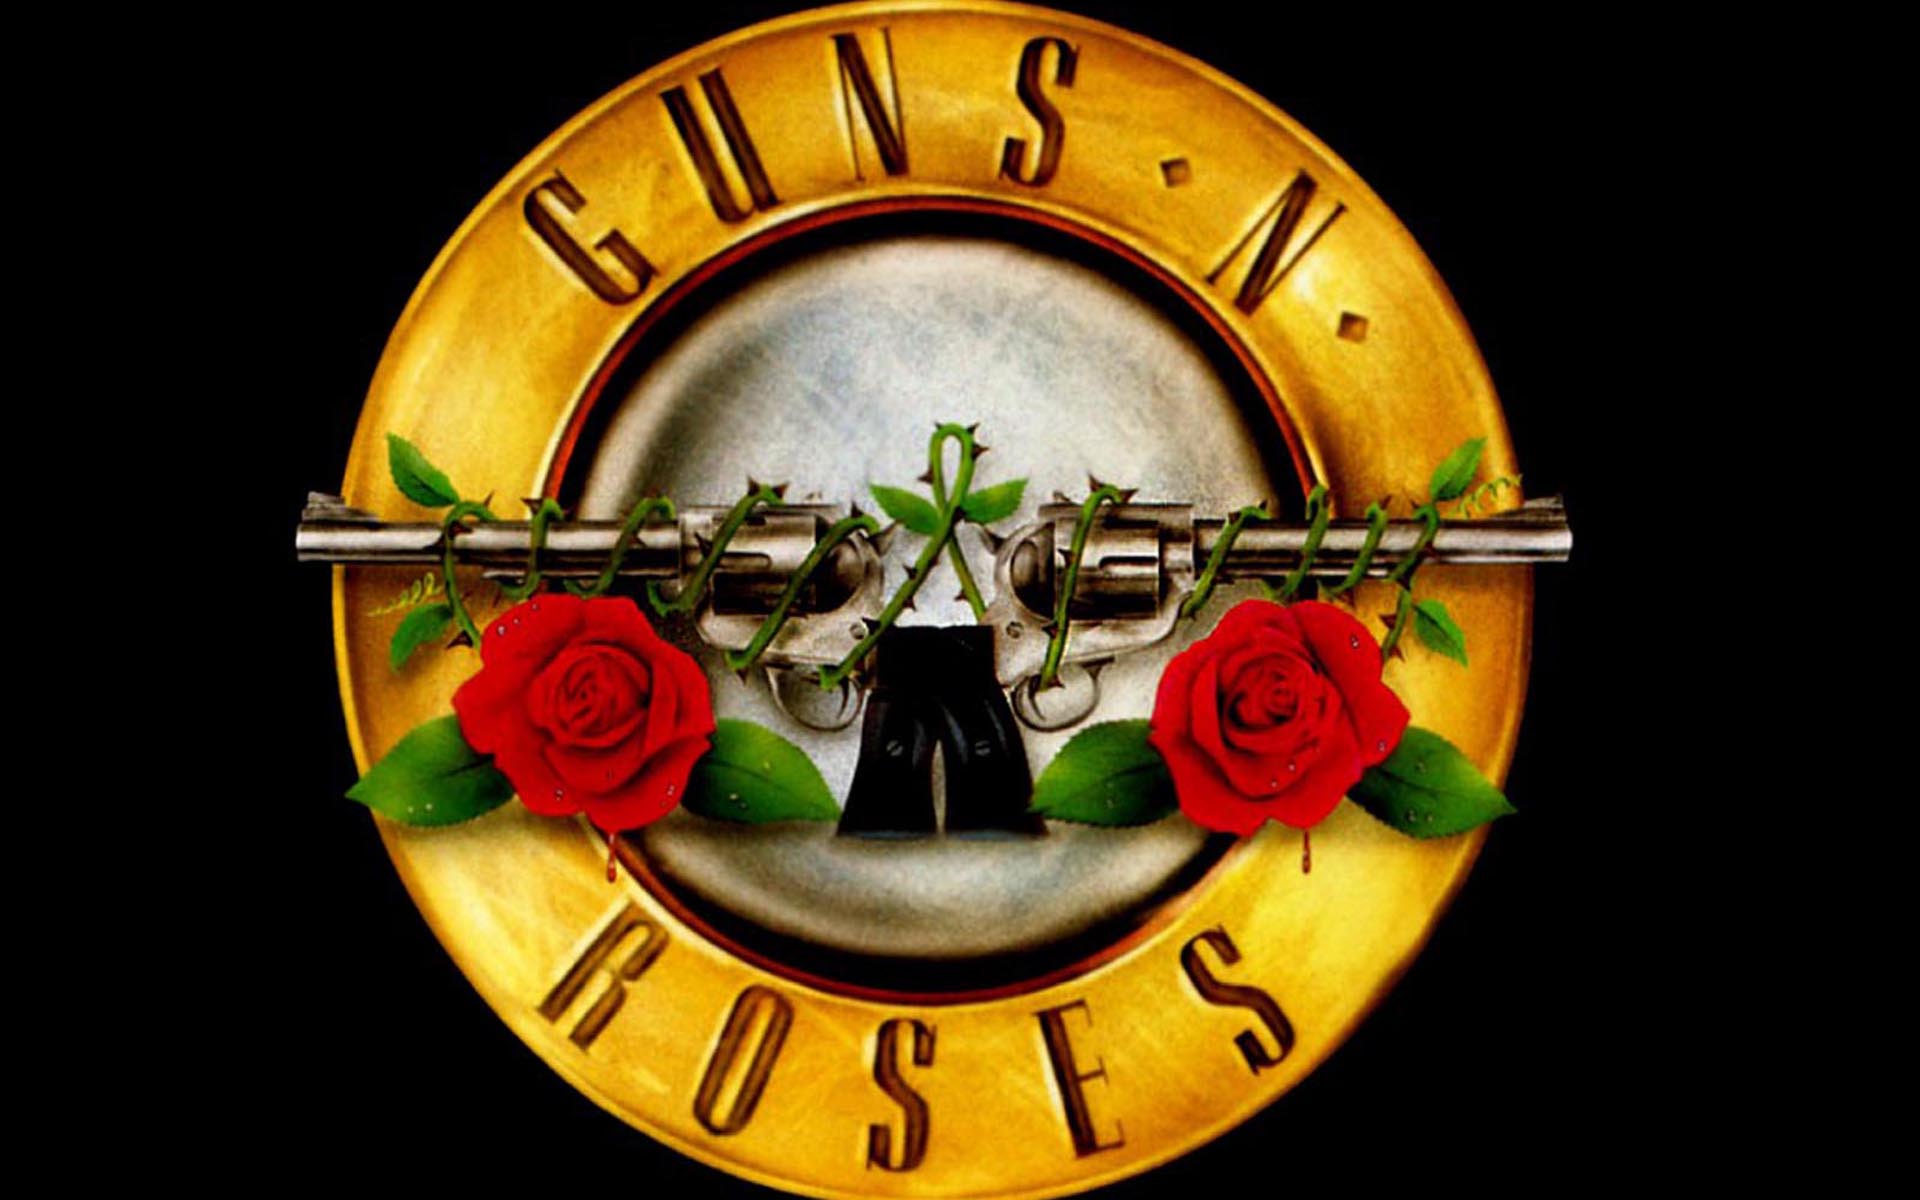 Guns N' Roses Wallpapers